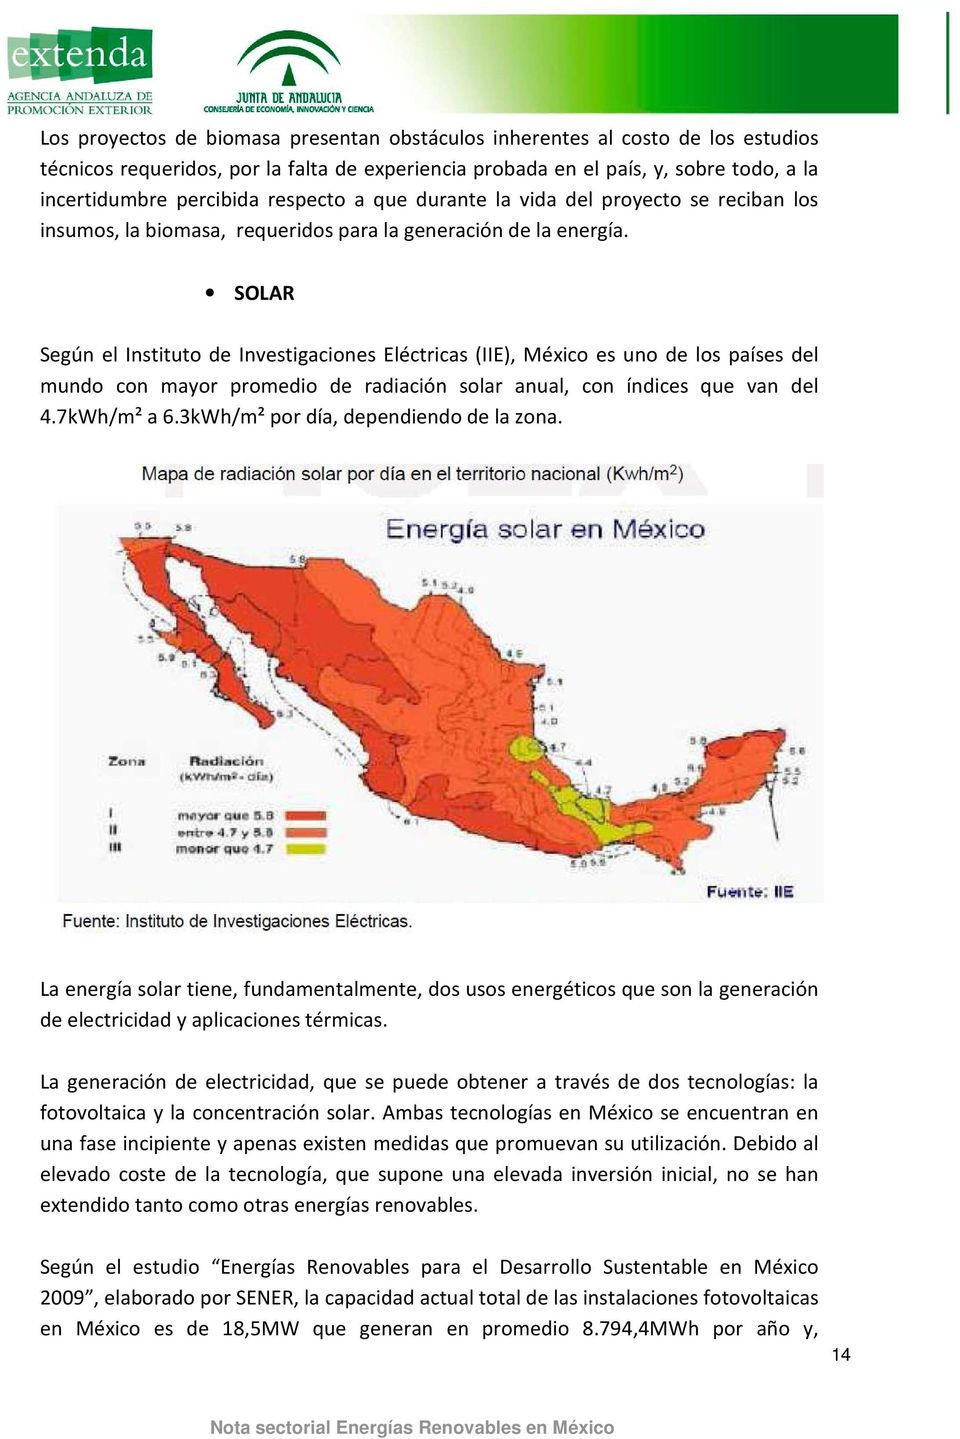 SOLAR Según el Instituto de Investigaciones Eléctricas (IIE), México es uno de los países del mundo con mayor promedio de radiación solar anual, con índices que van del 4.7kWh/m² a 6.